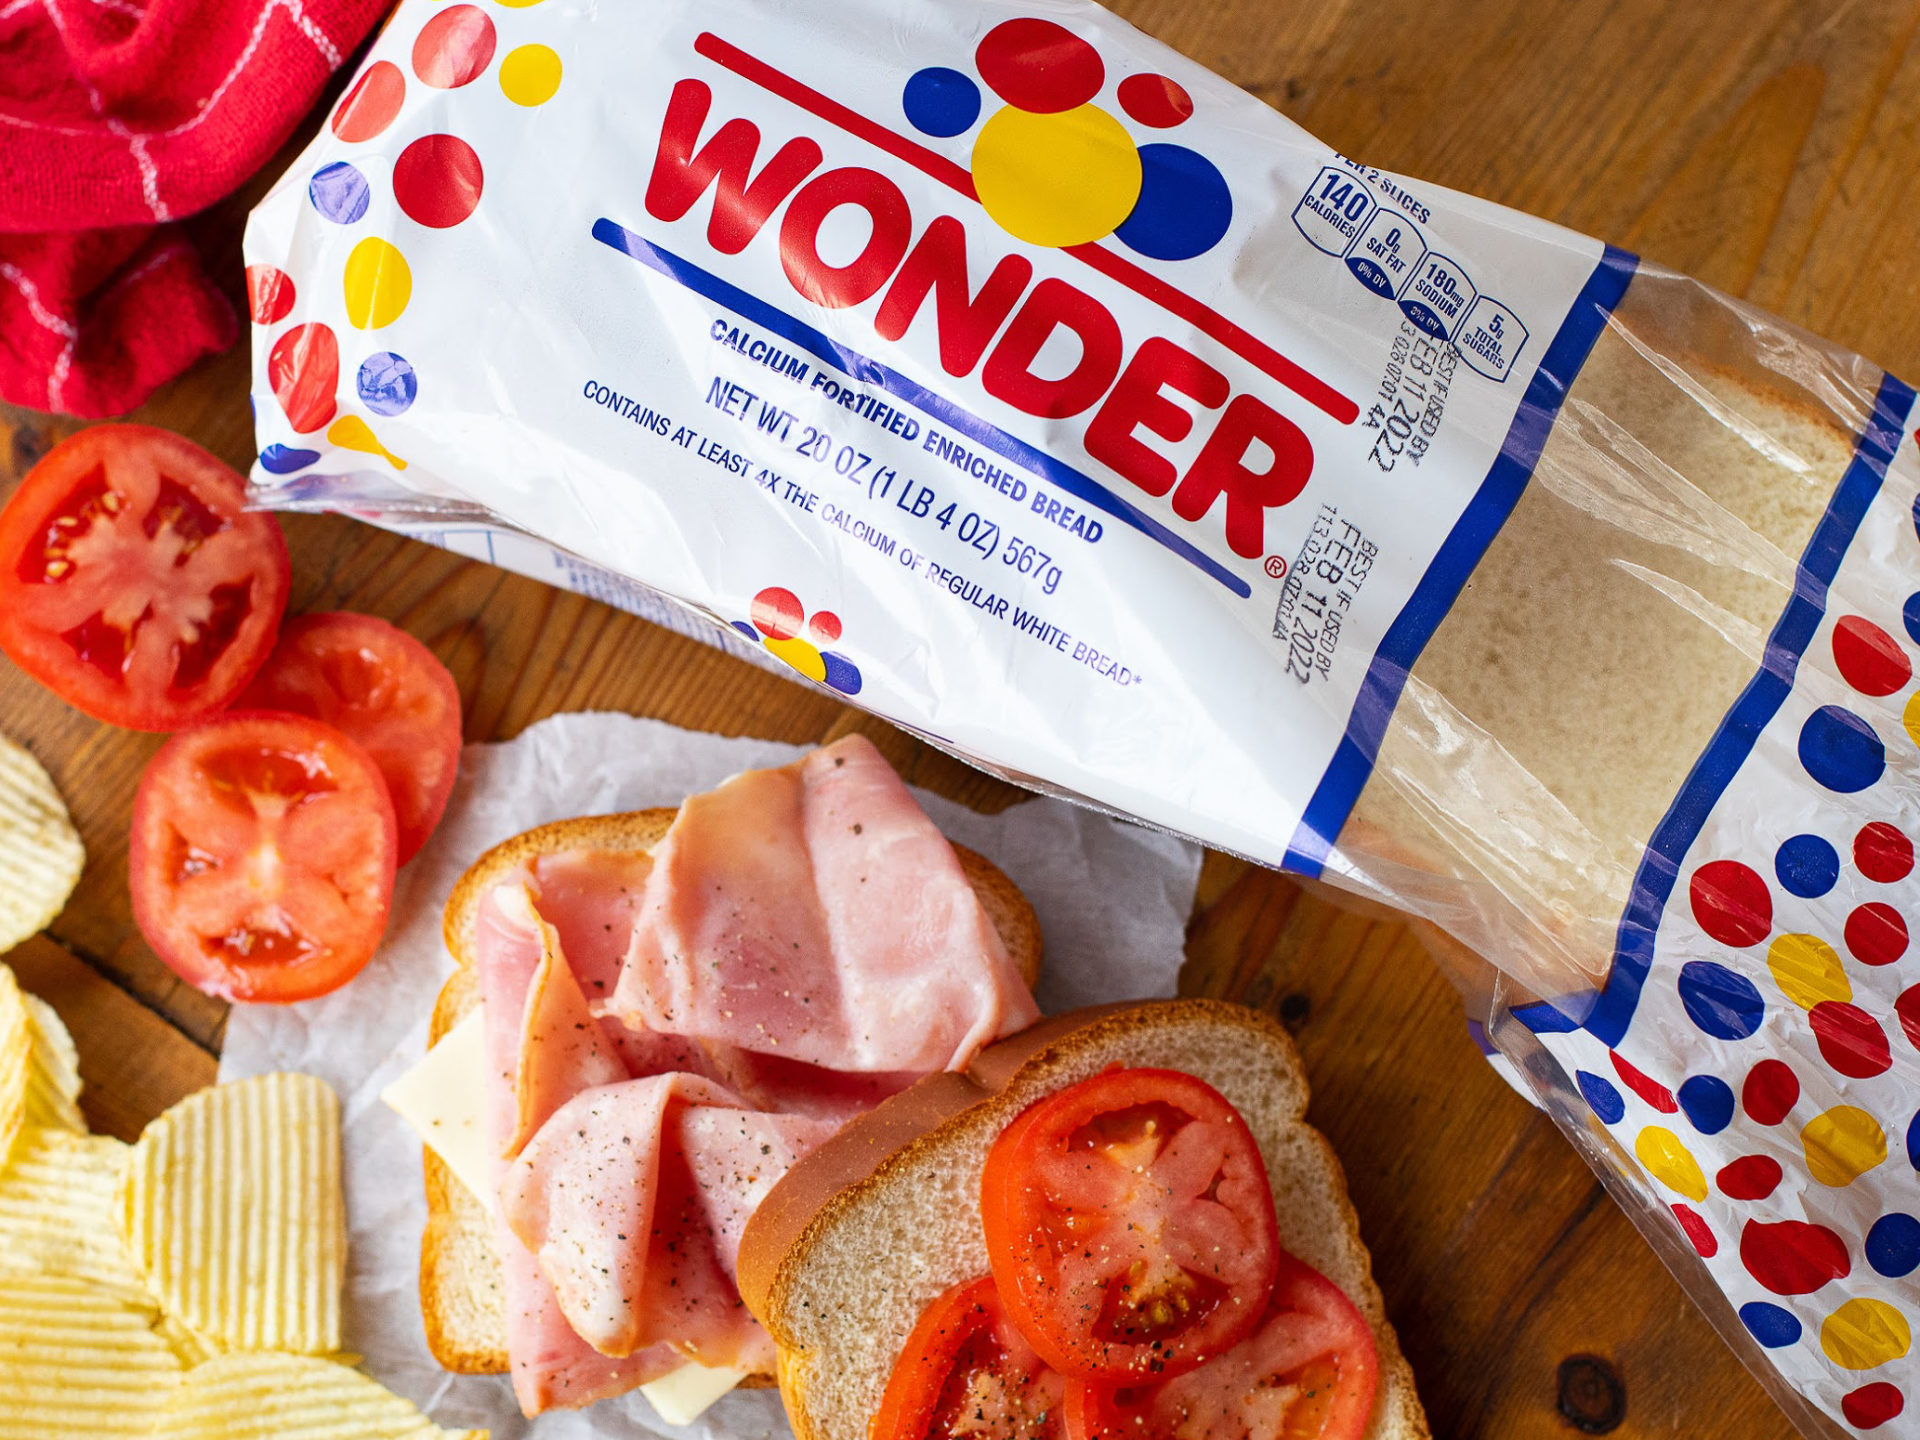 Wonder Bread As Low As $1.74 At Kroger